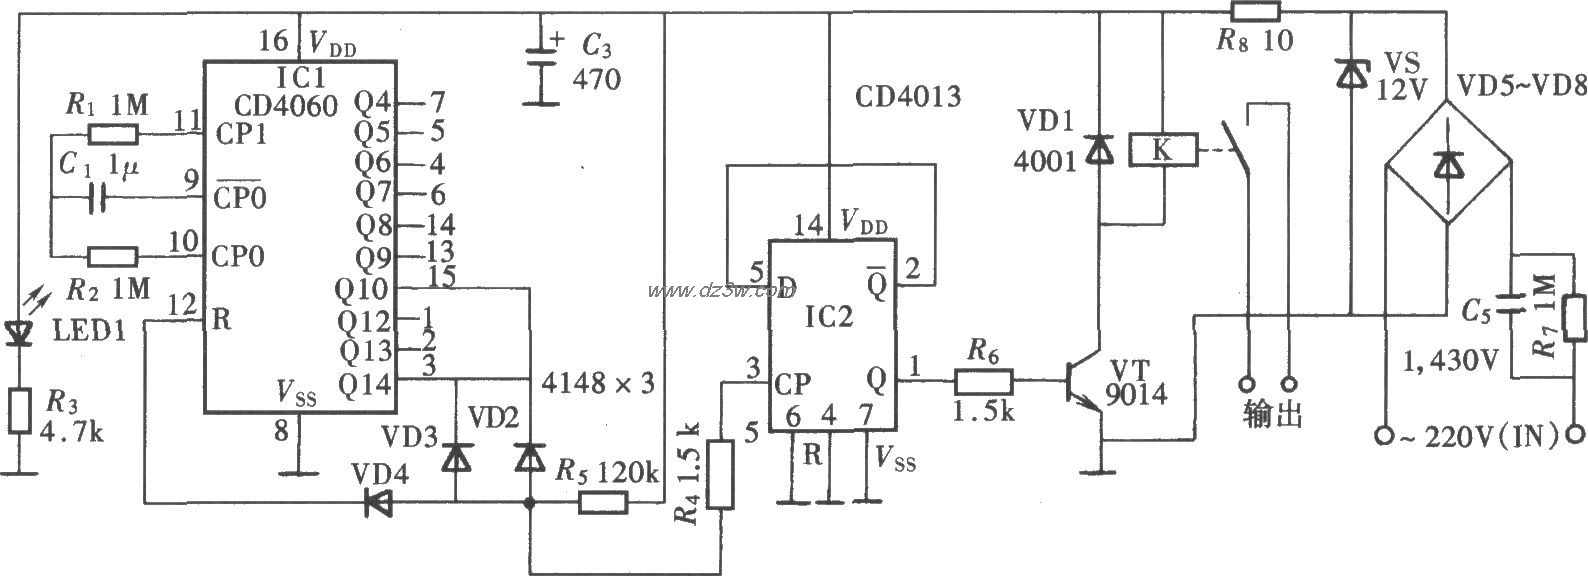 自动循环定时器电路(CD4